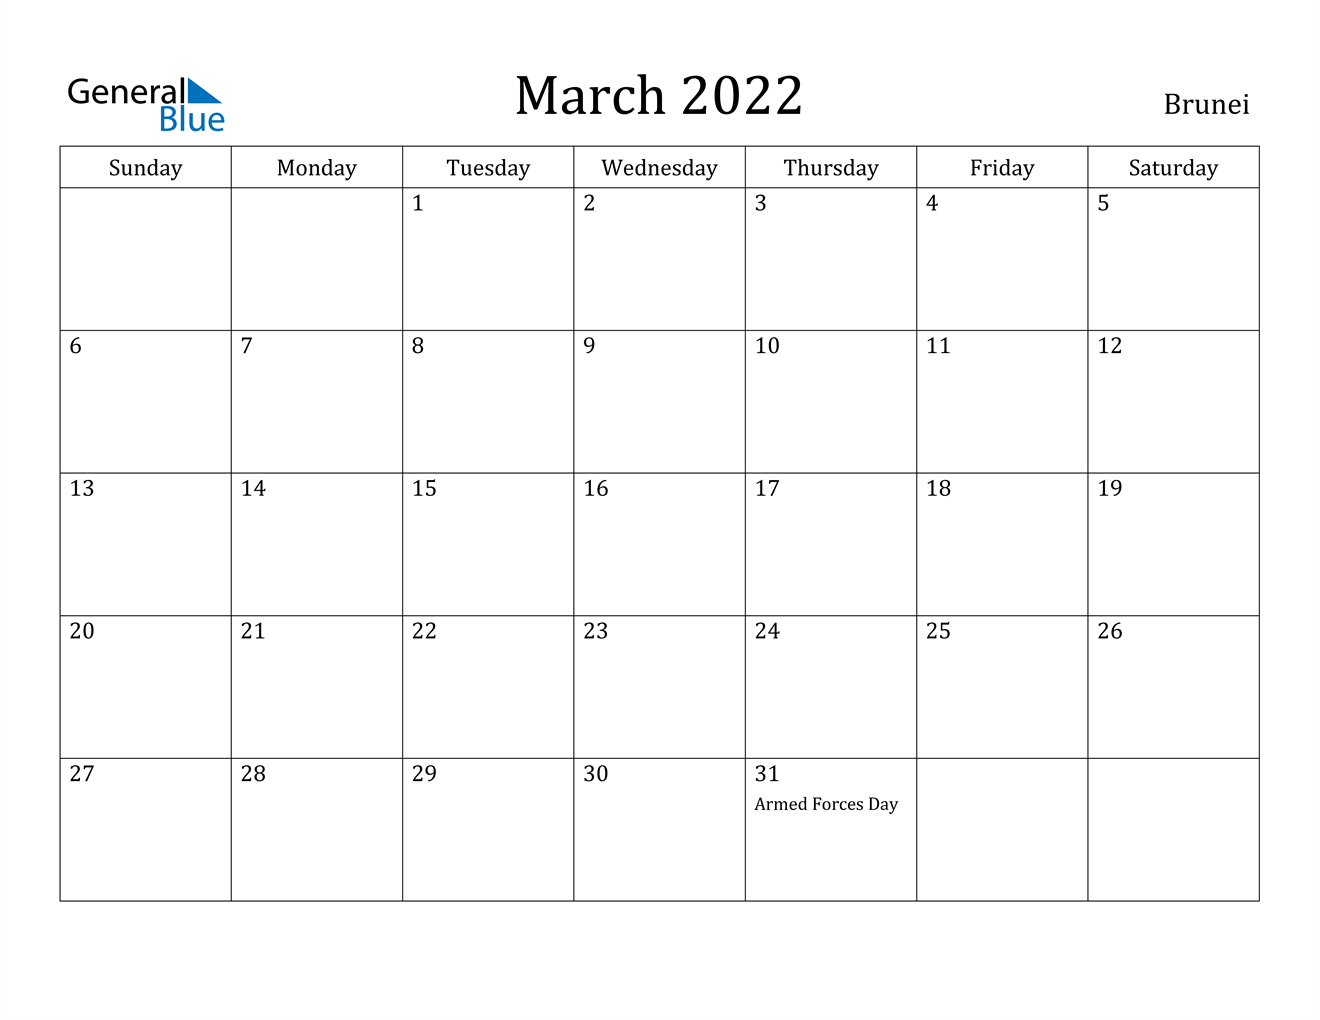 March 2022 Calendar - Brunei